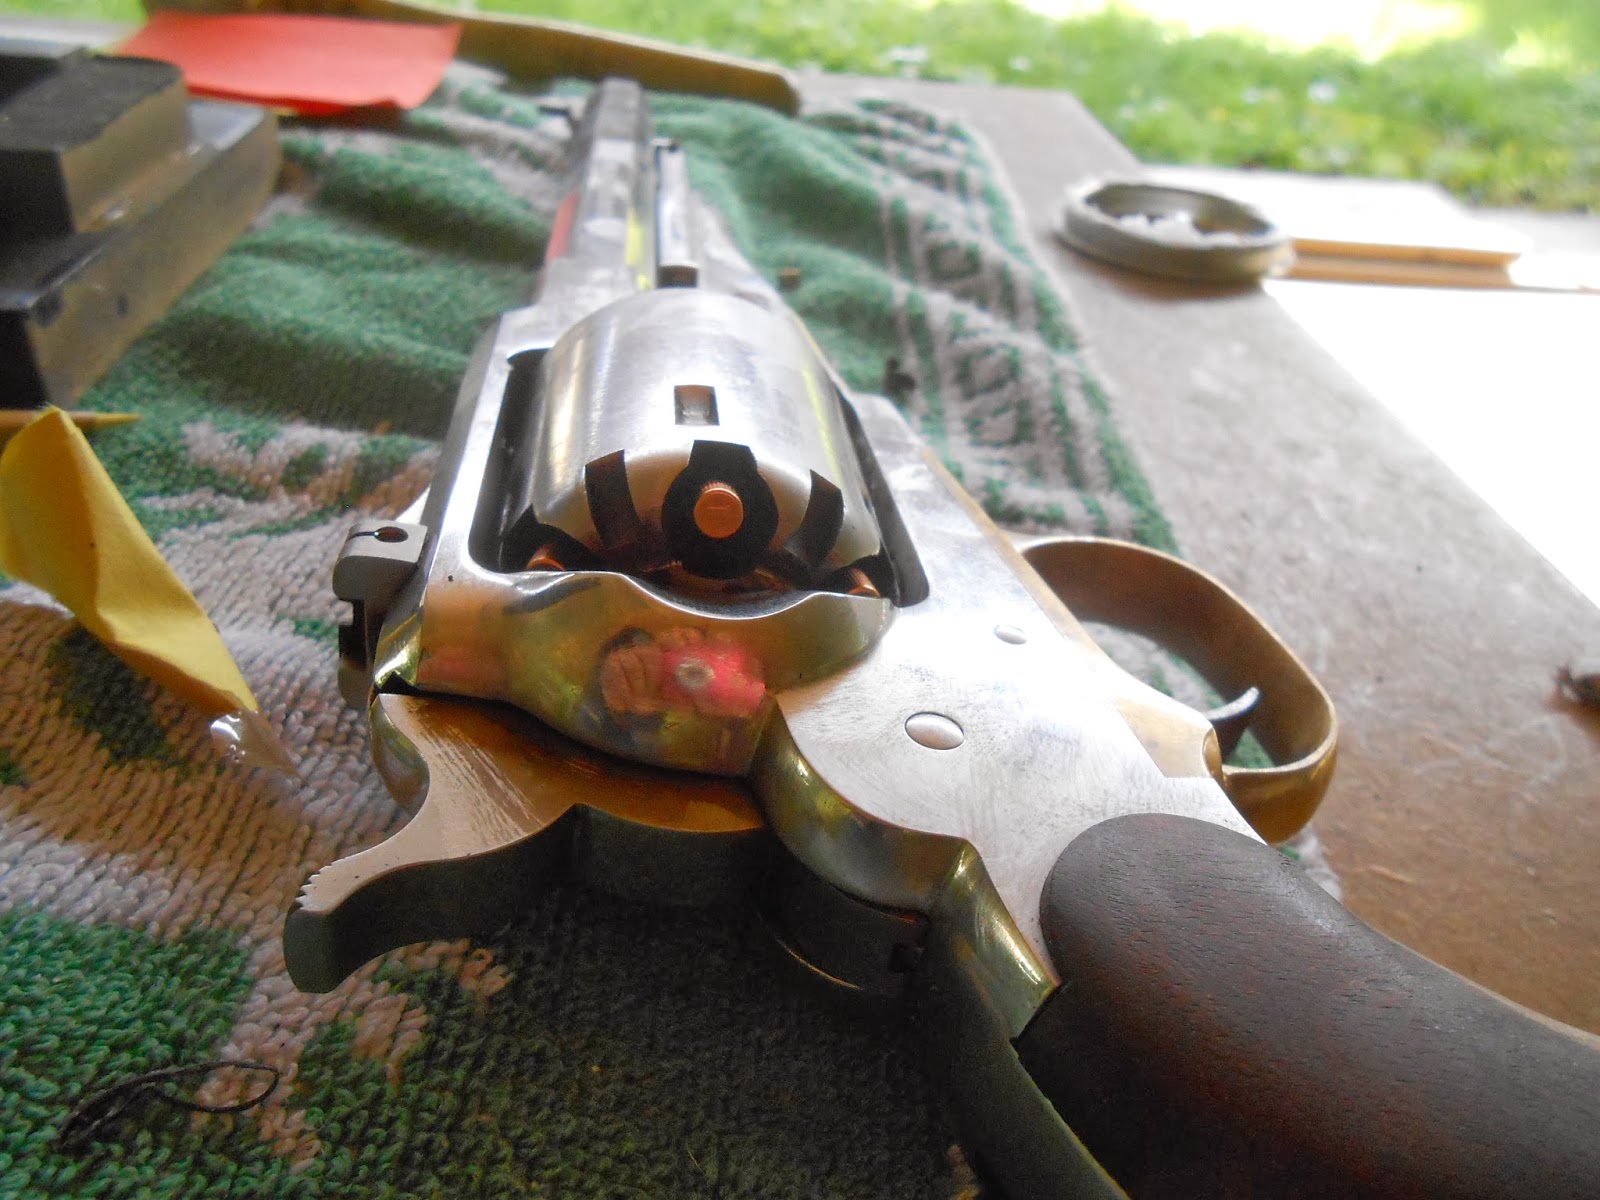 remington navy calibre 44